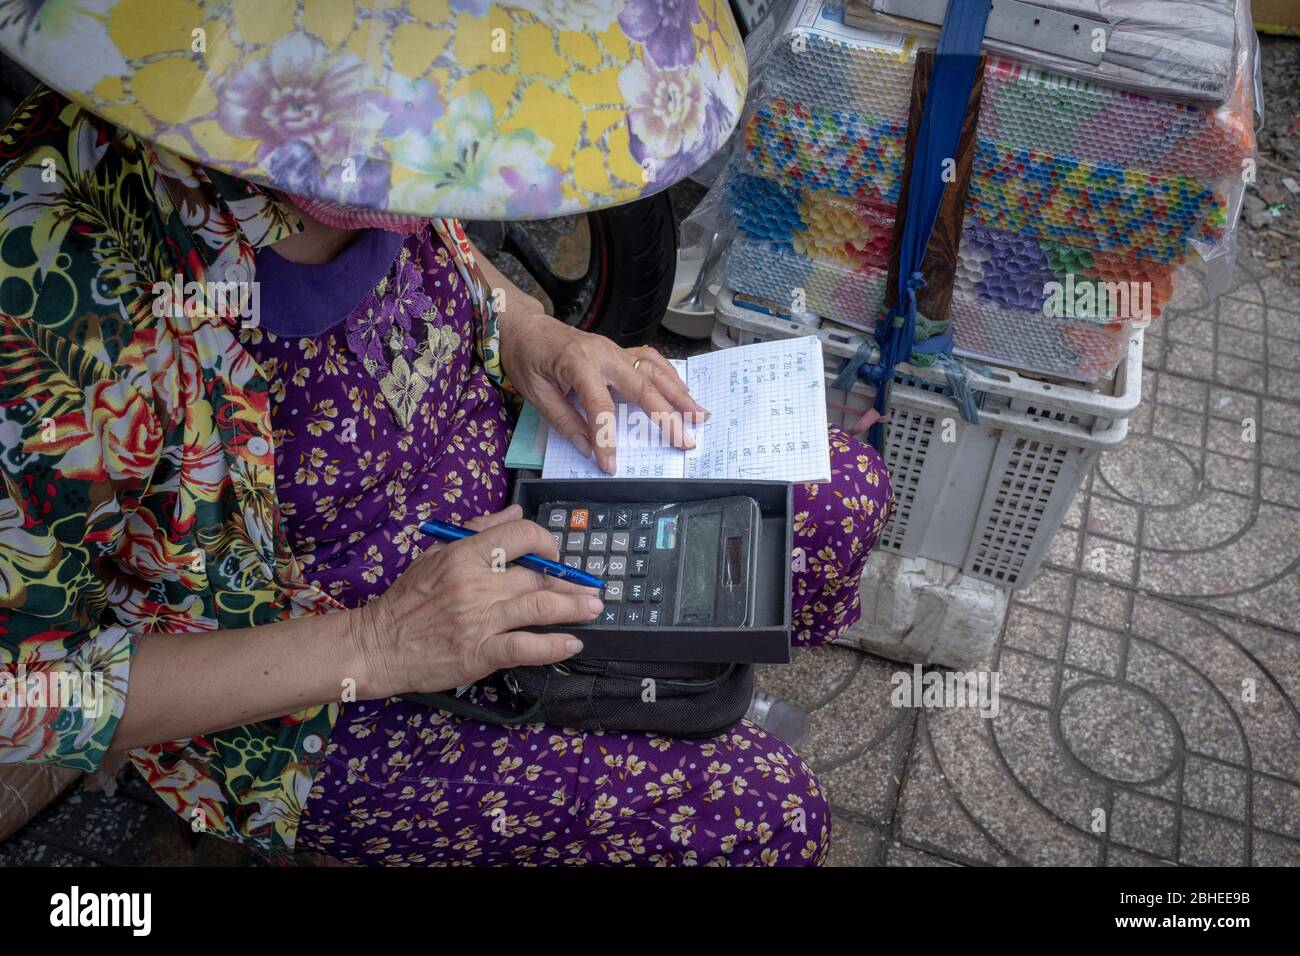 Ciudad Ho Chi Minh, Vietnam - 10 de abril de 2018: Una mujer mayor irreconocible usando una calculadora en el mercado de un agricultor, visto desde arriba Foto de stock